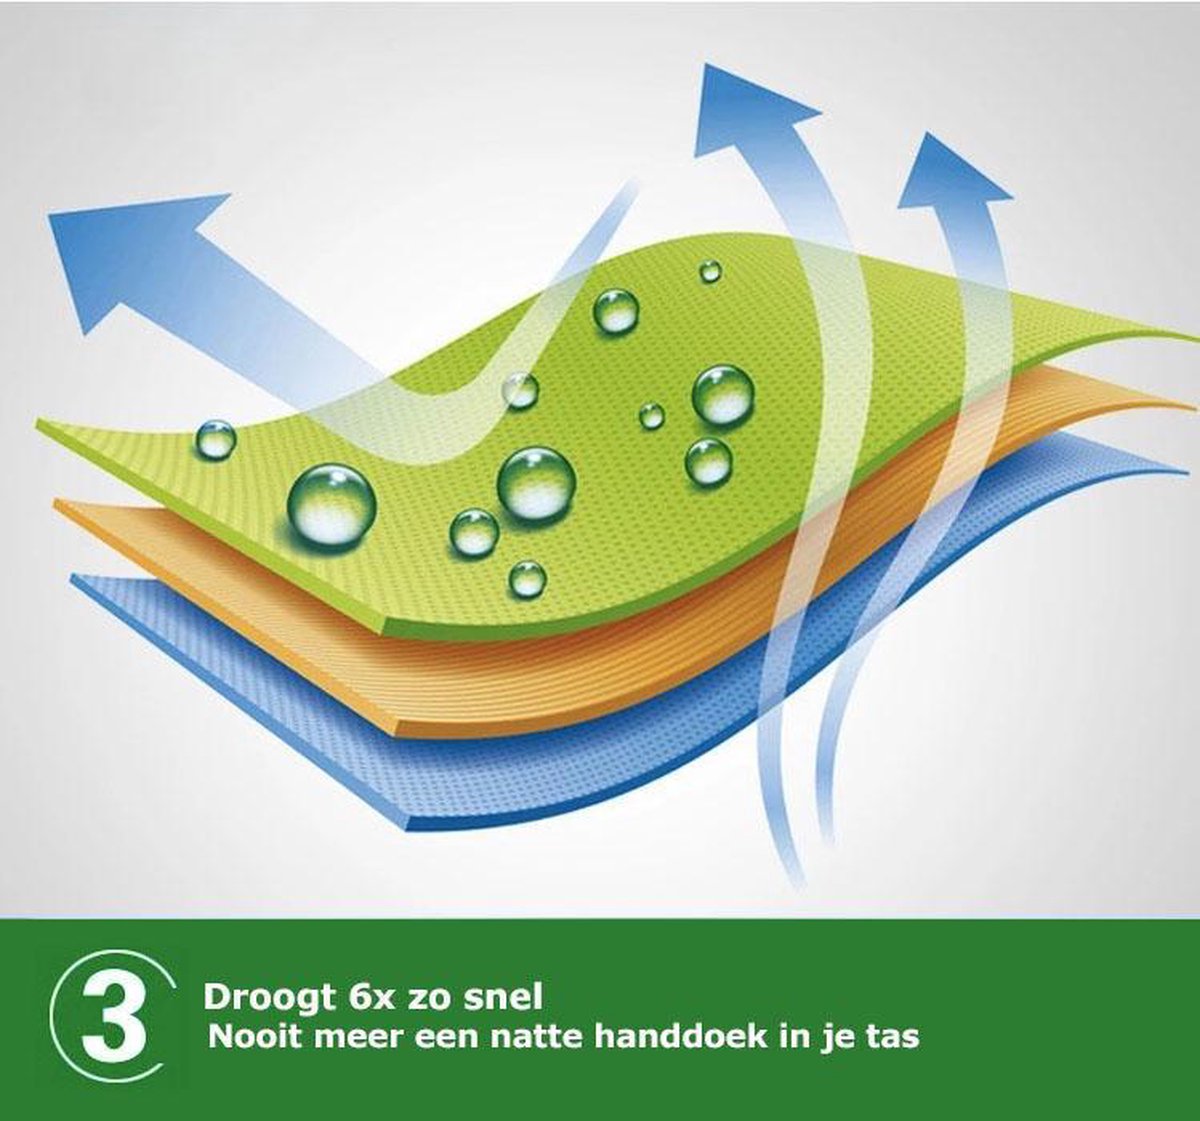 TravelGuru Microvezel Reishanddoek Set van 3 - 1x Large (85 * 150cm), 2x Small (40 * 80 cm) - Sneldrogende, lichtgewicht handdoek ideaal voor sporten, reizen, outdoor & strand - Microfiber Travel Towel - Groen